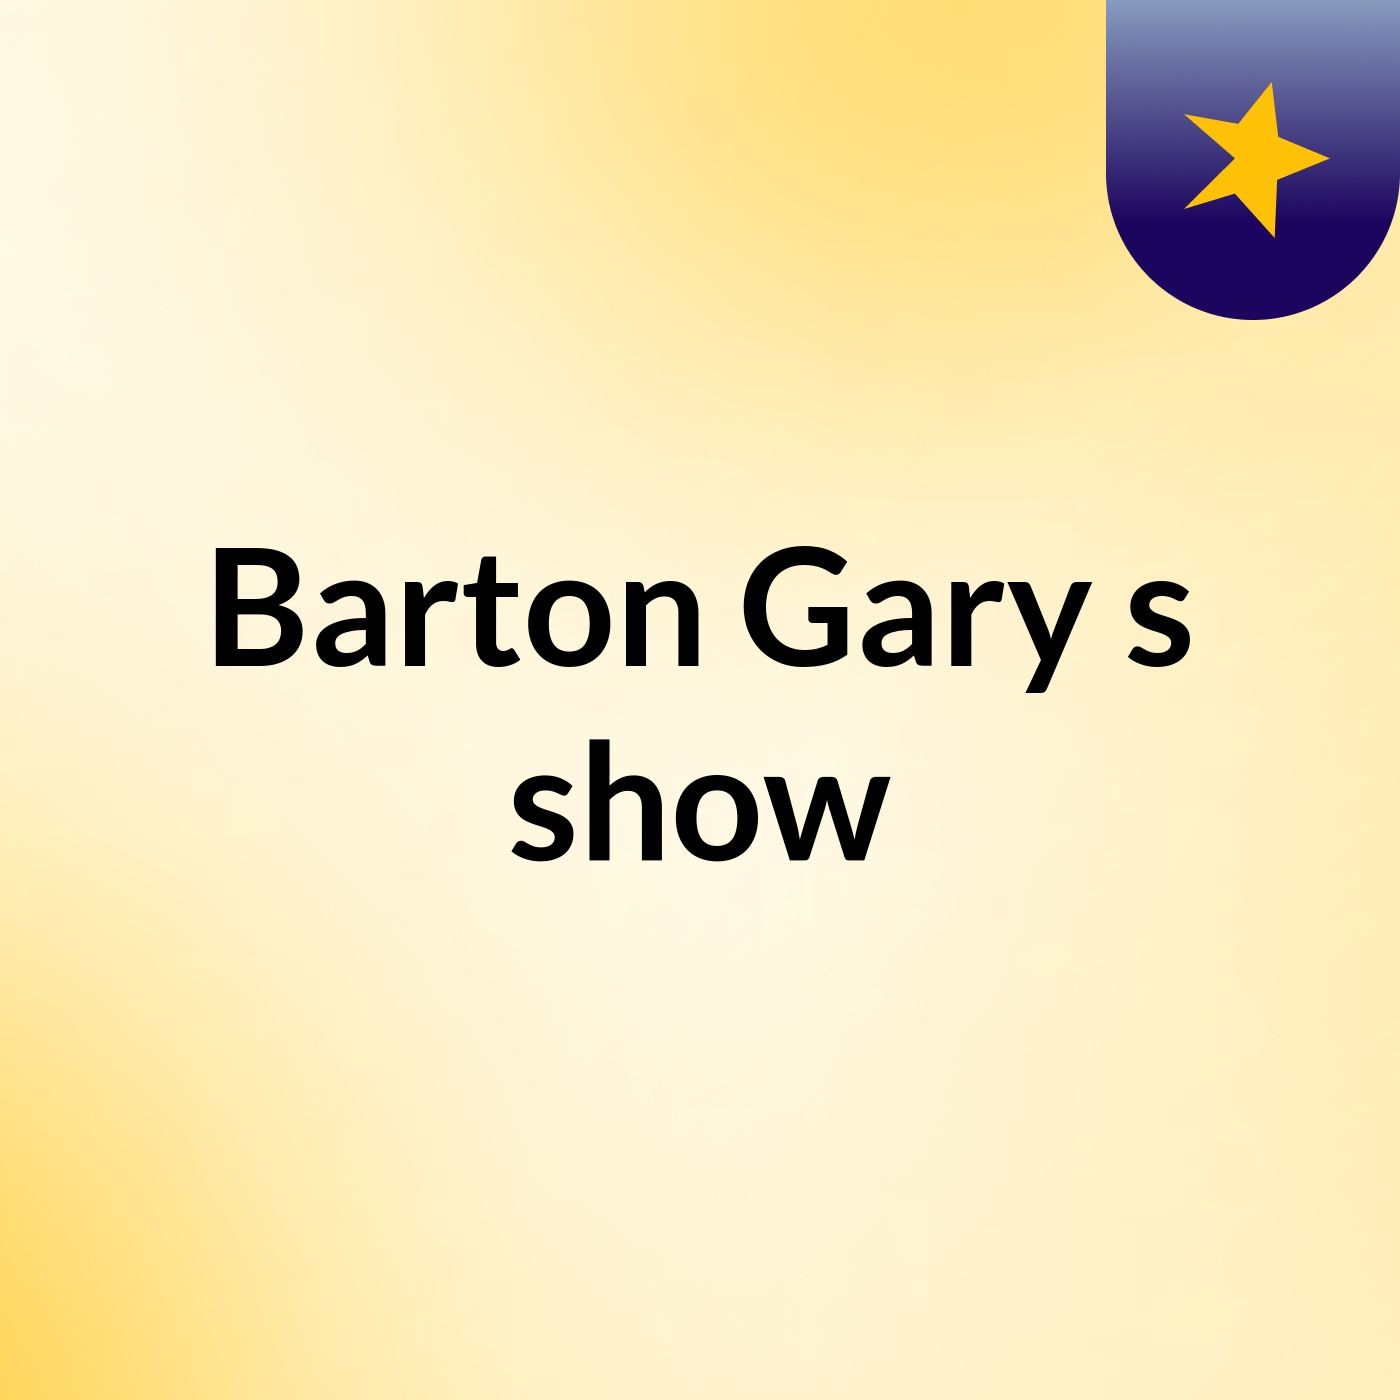 Episode 4 - Barton Gary's show